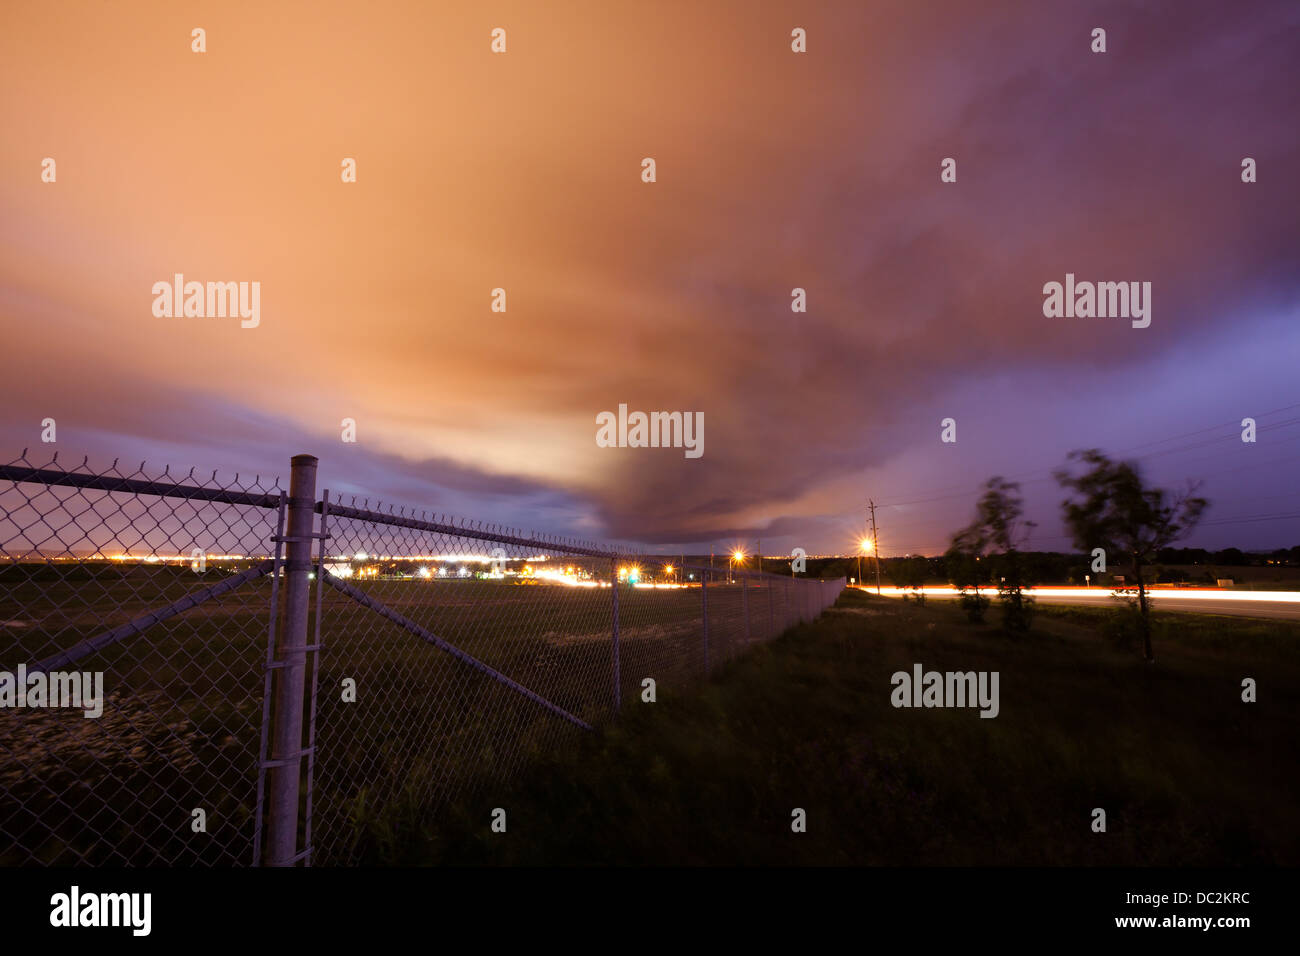 Dramatische Wolken in der Abenddämmerung zu schaffen durch ein Gewitter vorbei. Newmarket, Ontario, Kanada Stockfoto